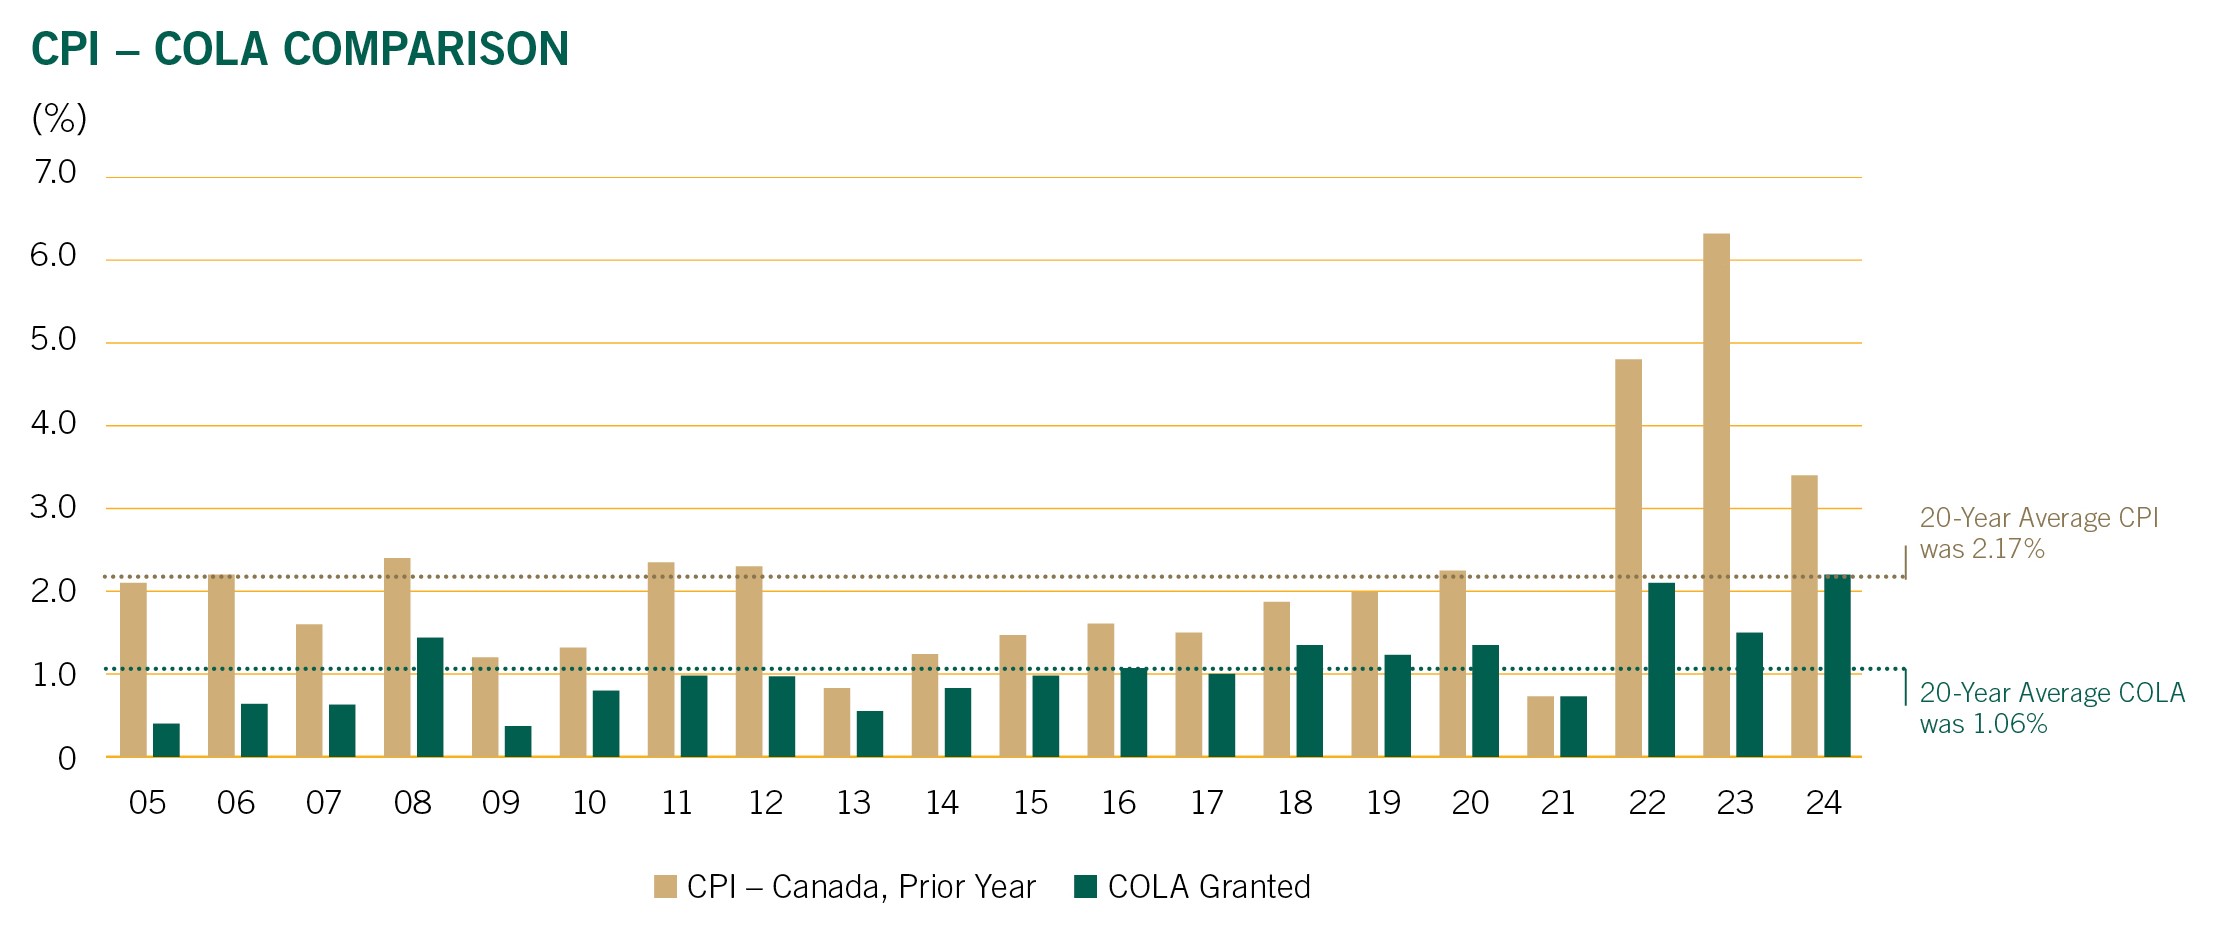 CPI-COLA comparison graph image